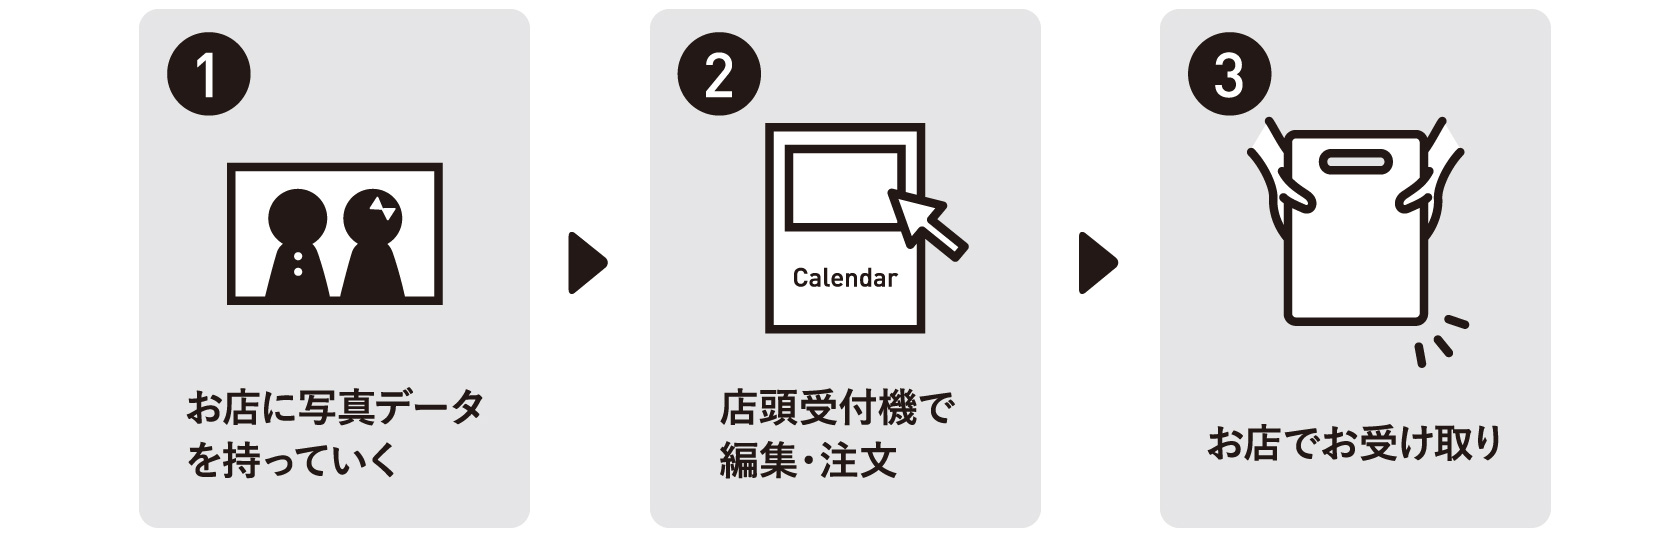 カレンダー注文方法